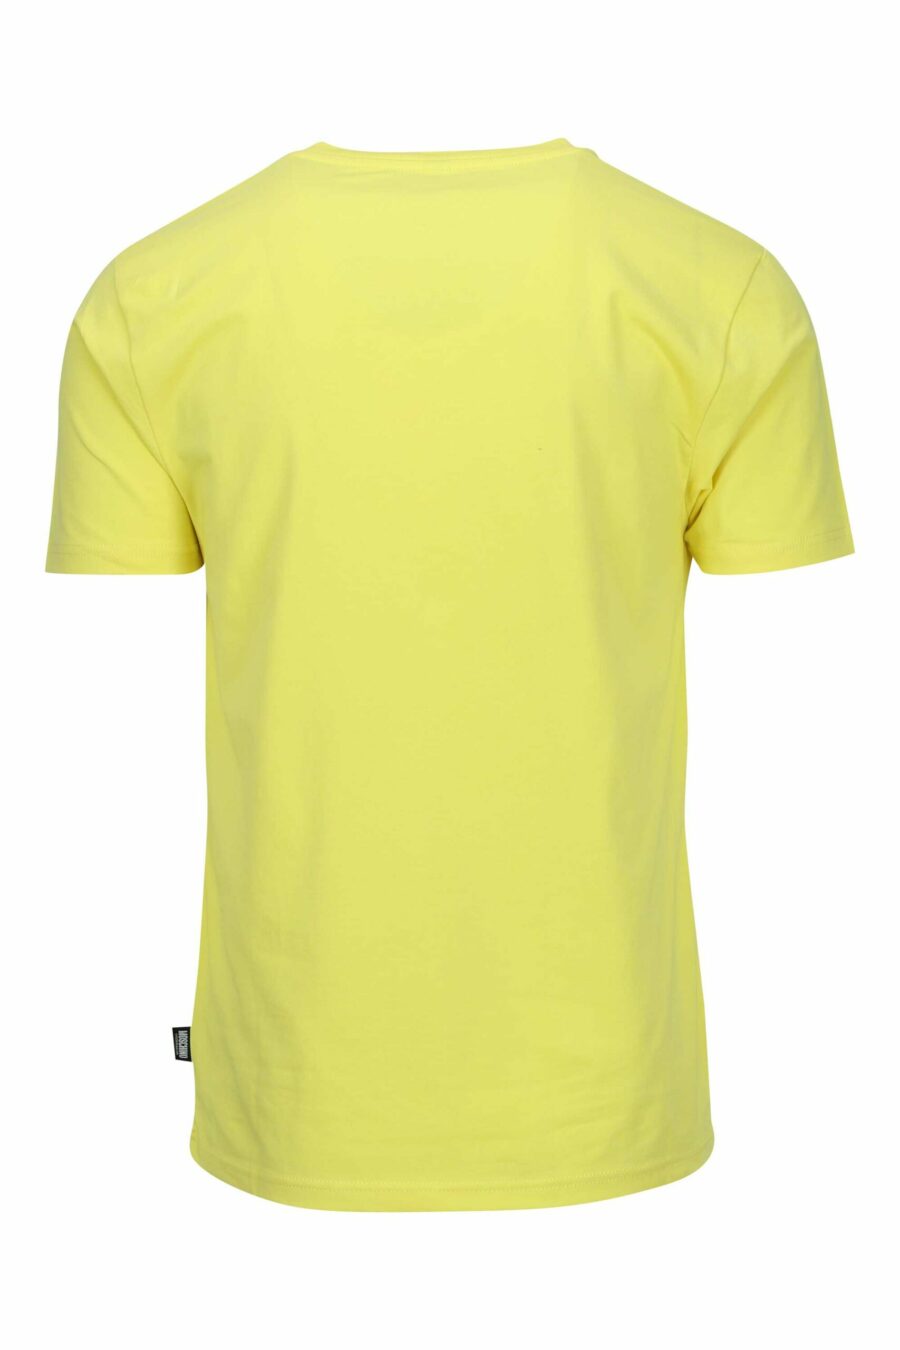 Camiseta amarilla con minilogo parche oso "underbear" - 667113605913 1 scaled